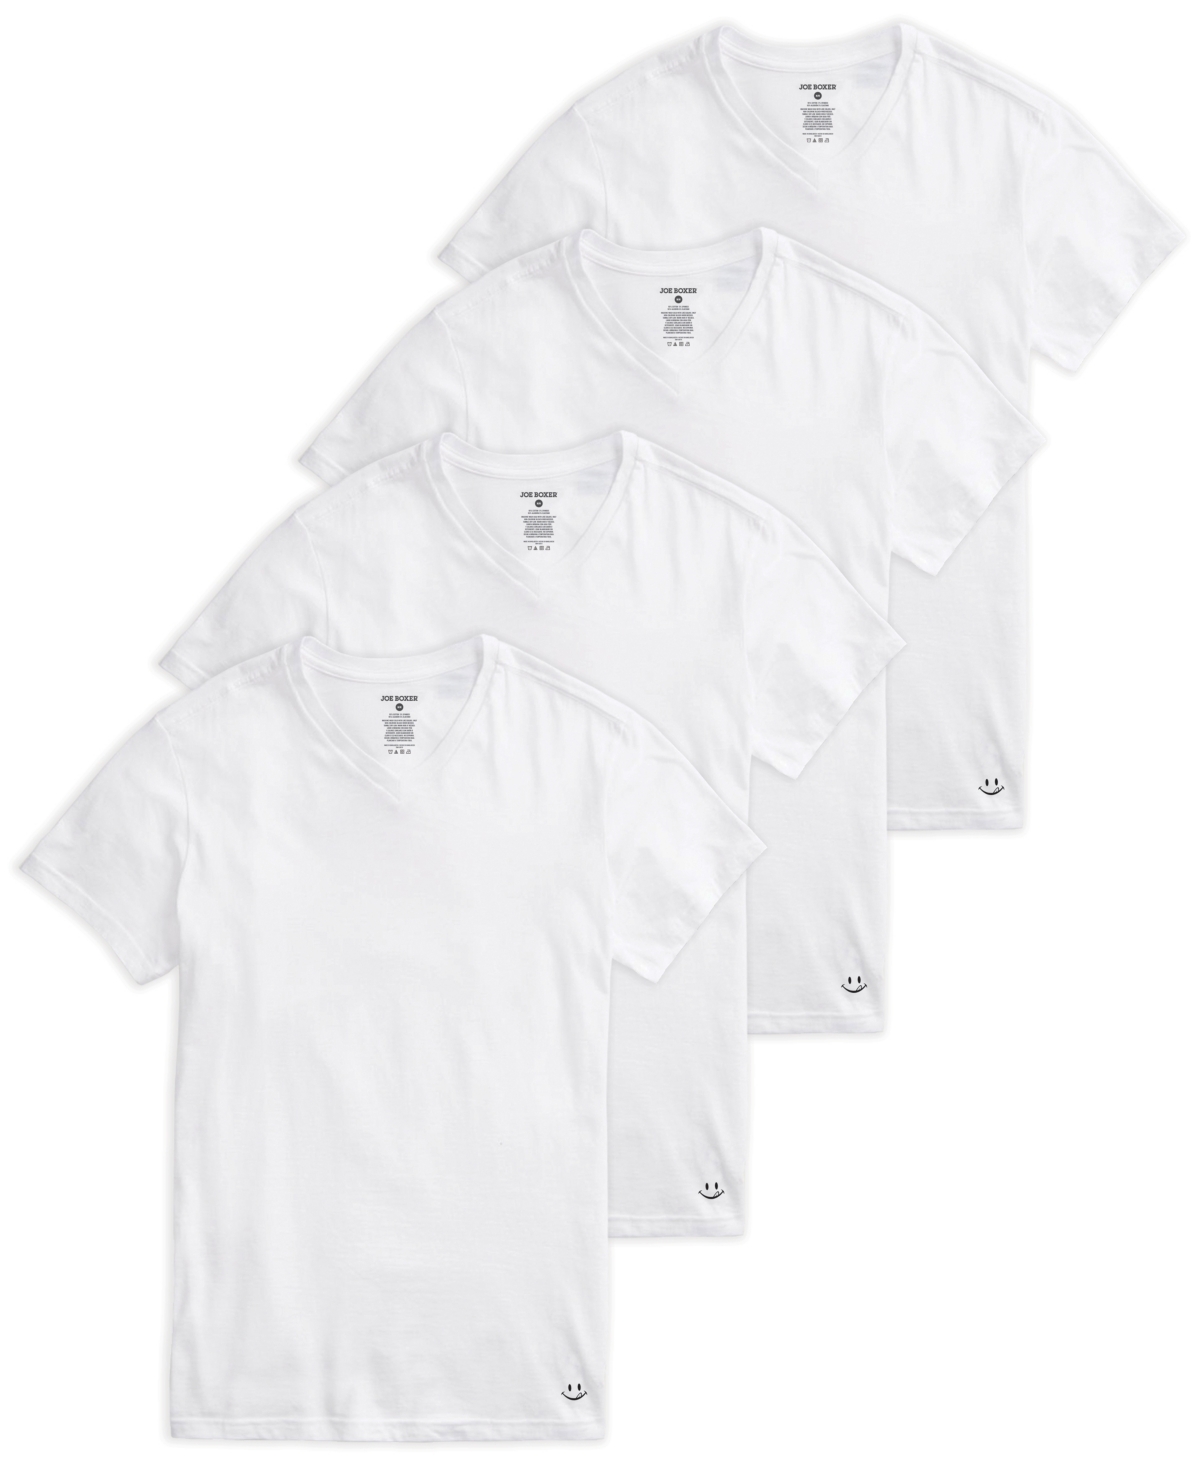 Joe Boxer Men's V-Neck T-shirt, Pack of 4